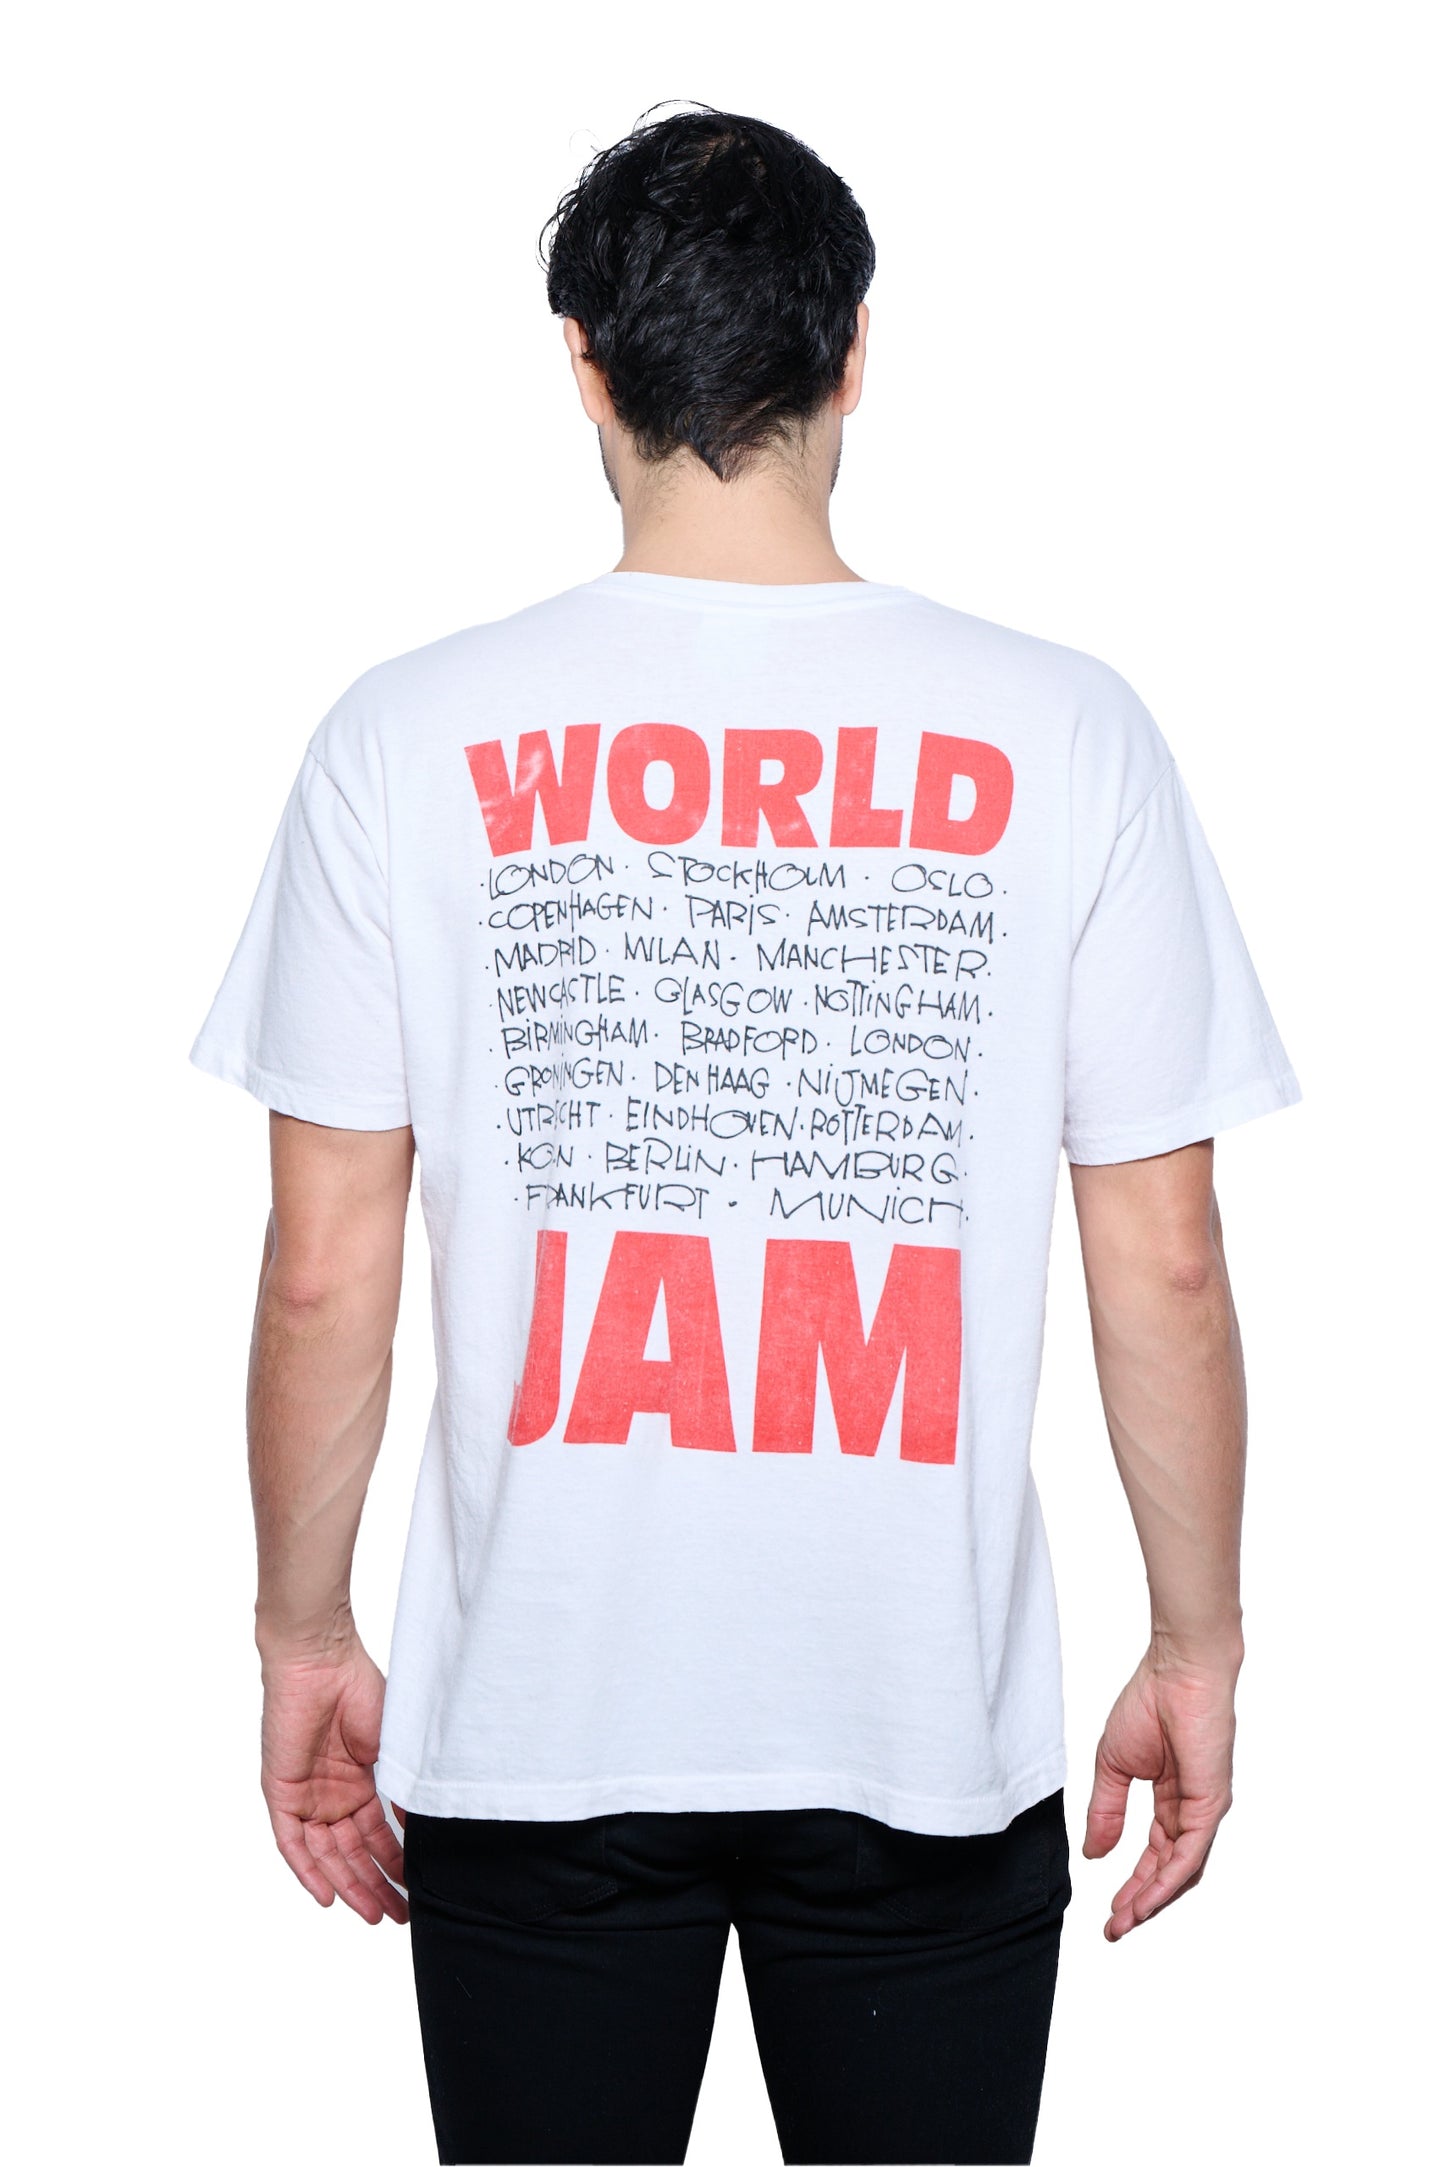 Vintage 1990's Pearl Jam Tour T-Shirt